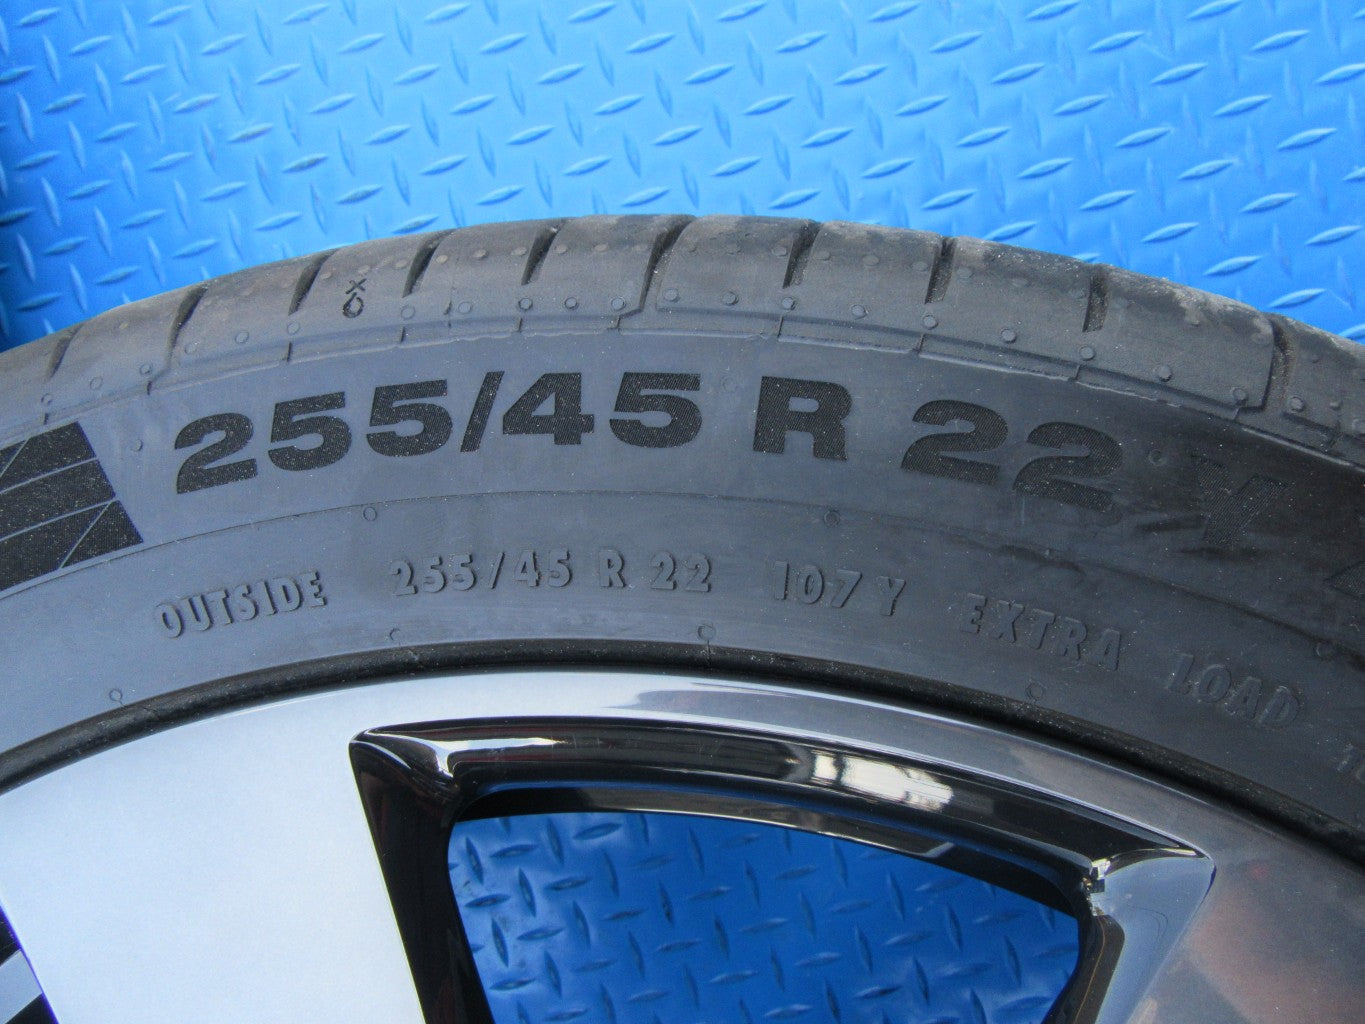 22" Rolls Royce Cullinan rims wheels tires black polished #2567